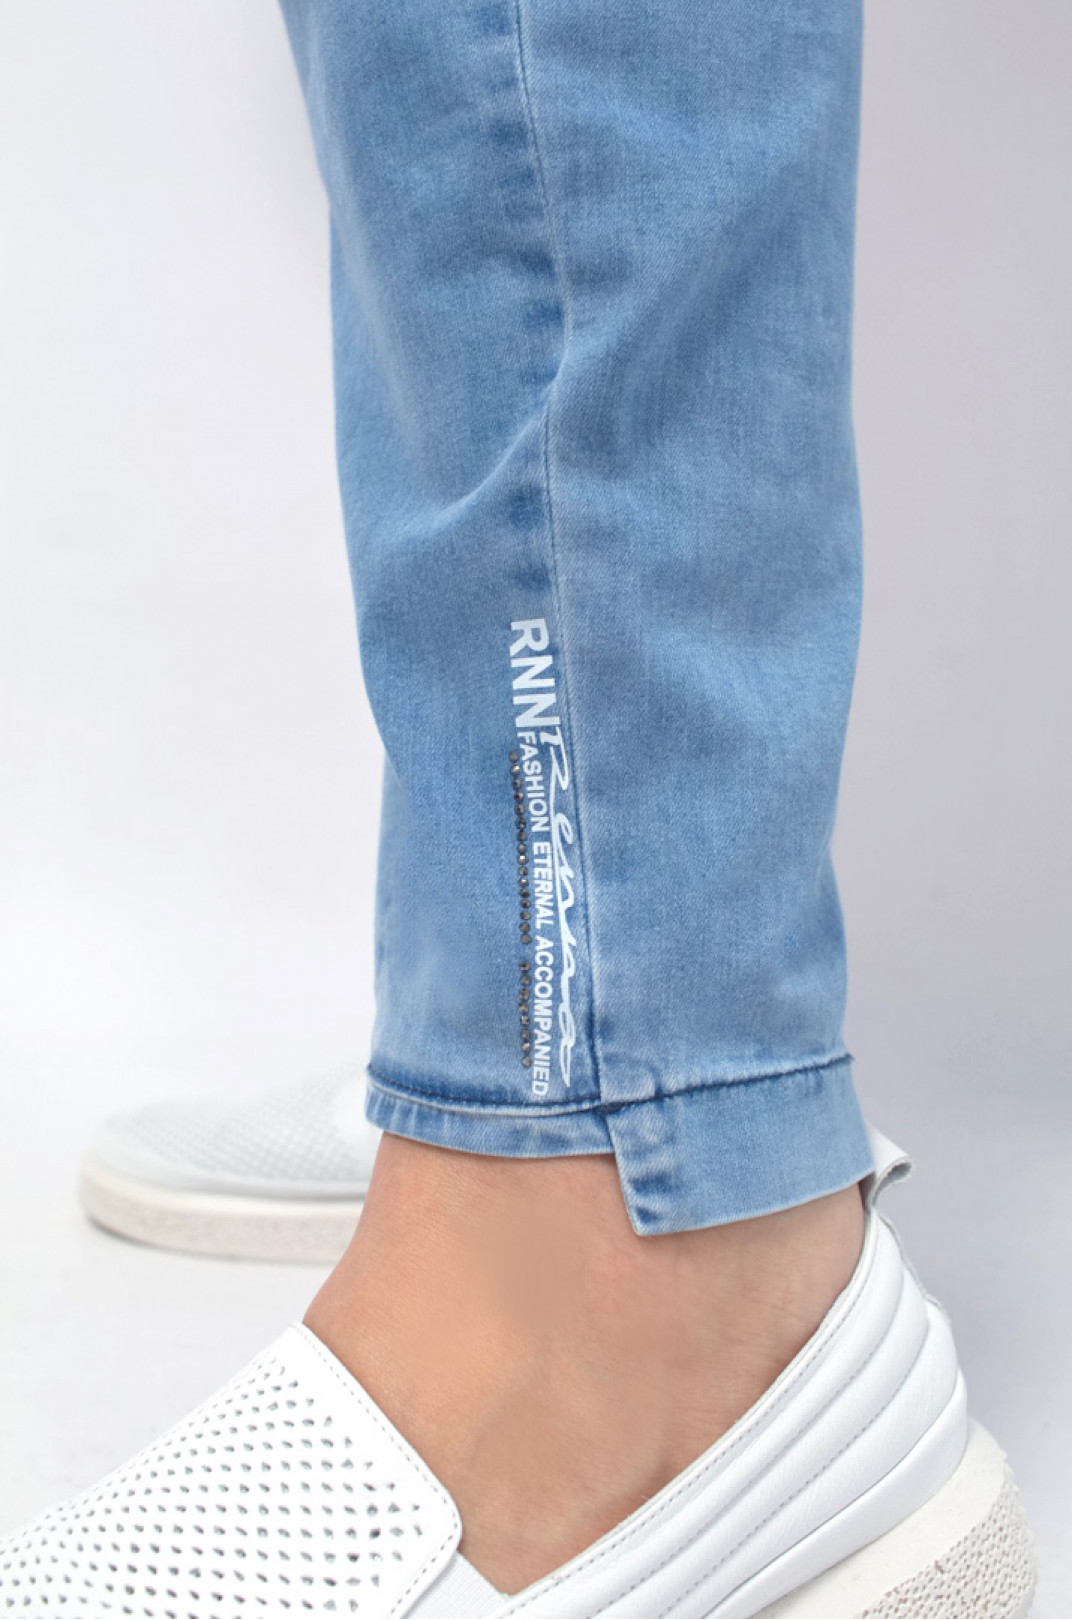 Світлі джинси декоровані написом і блискітками батал